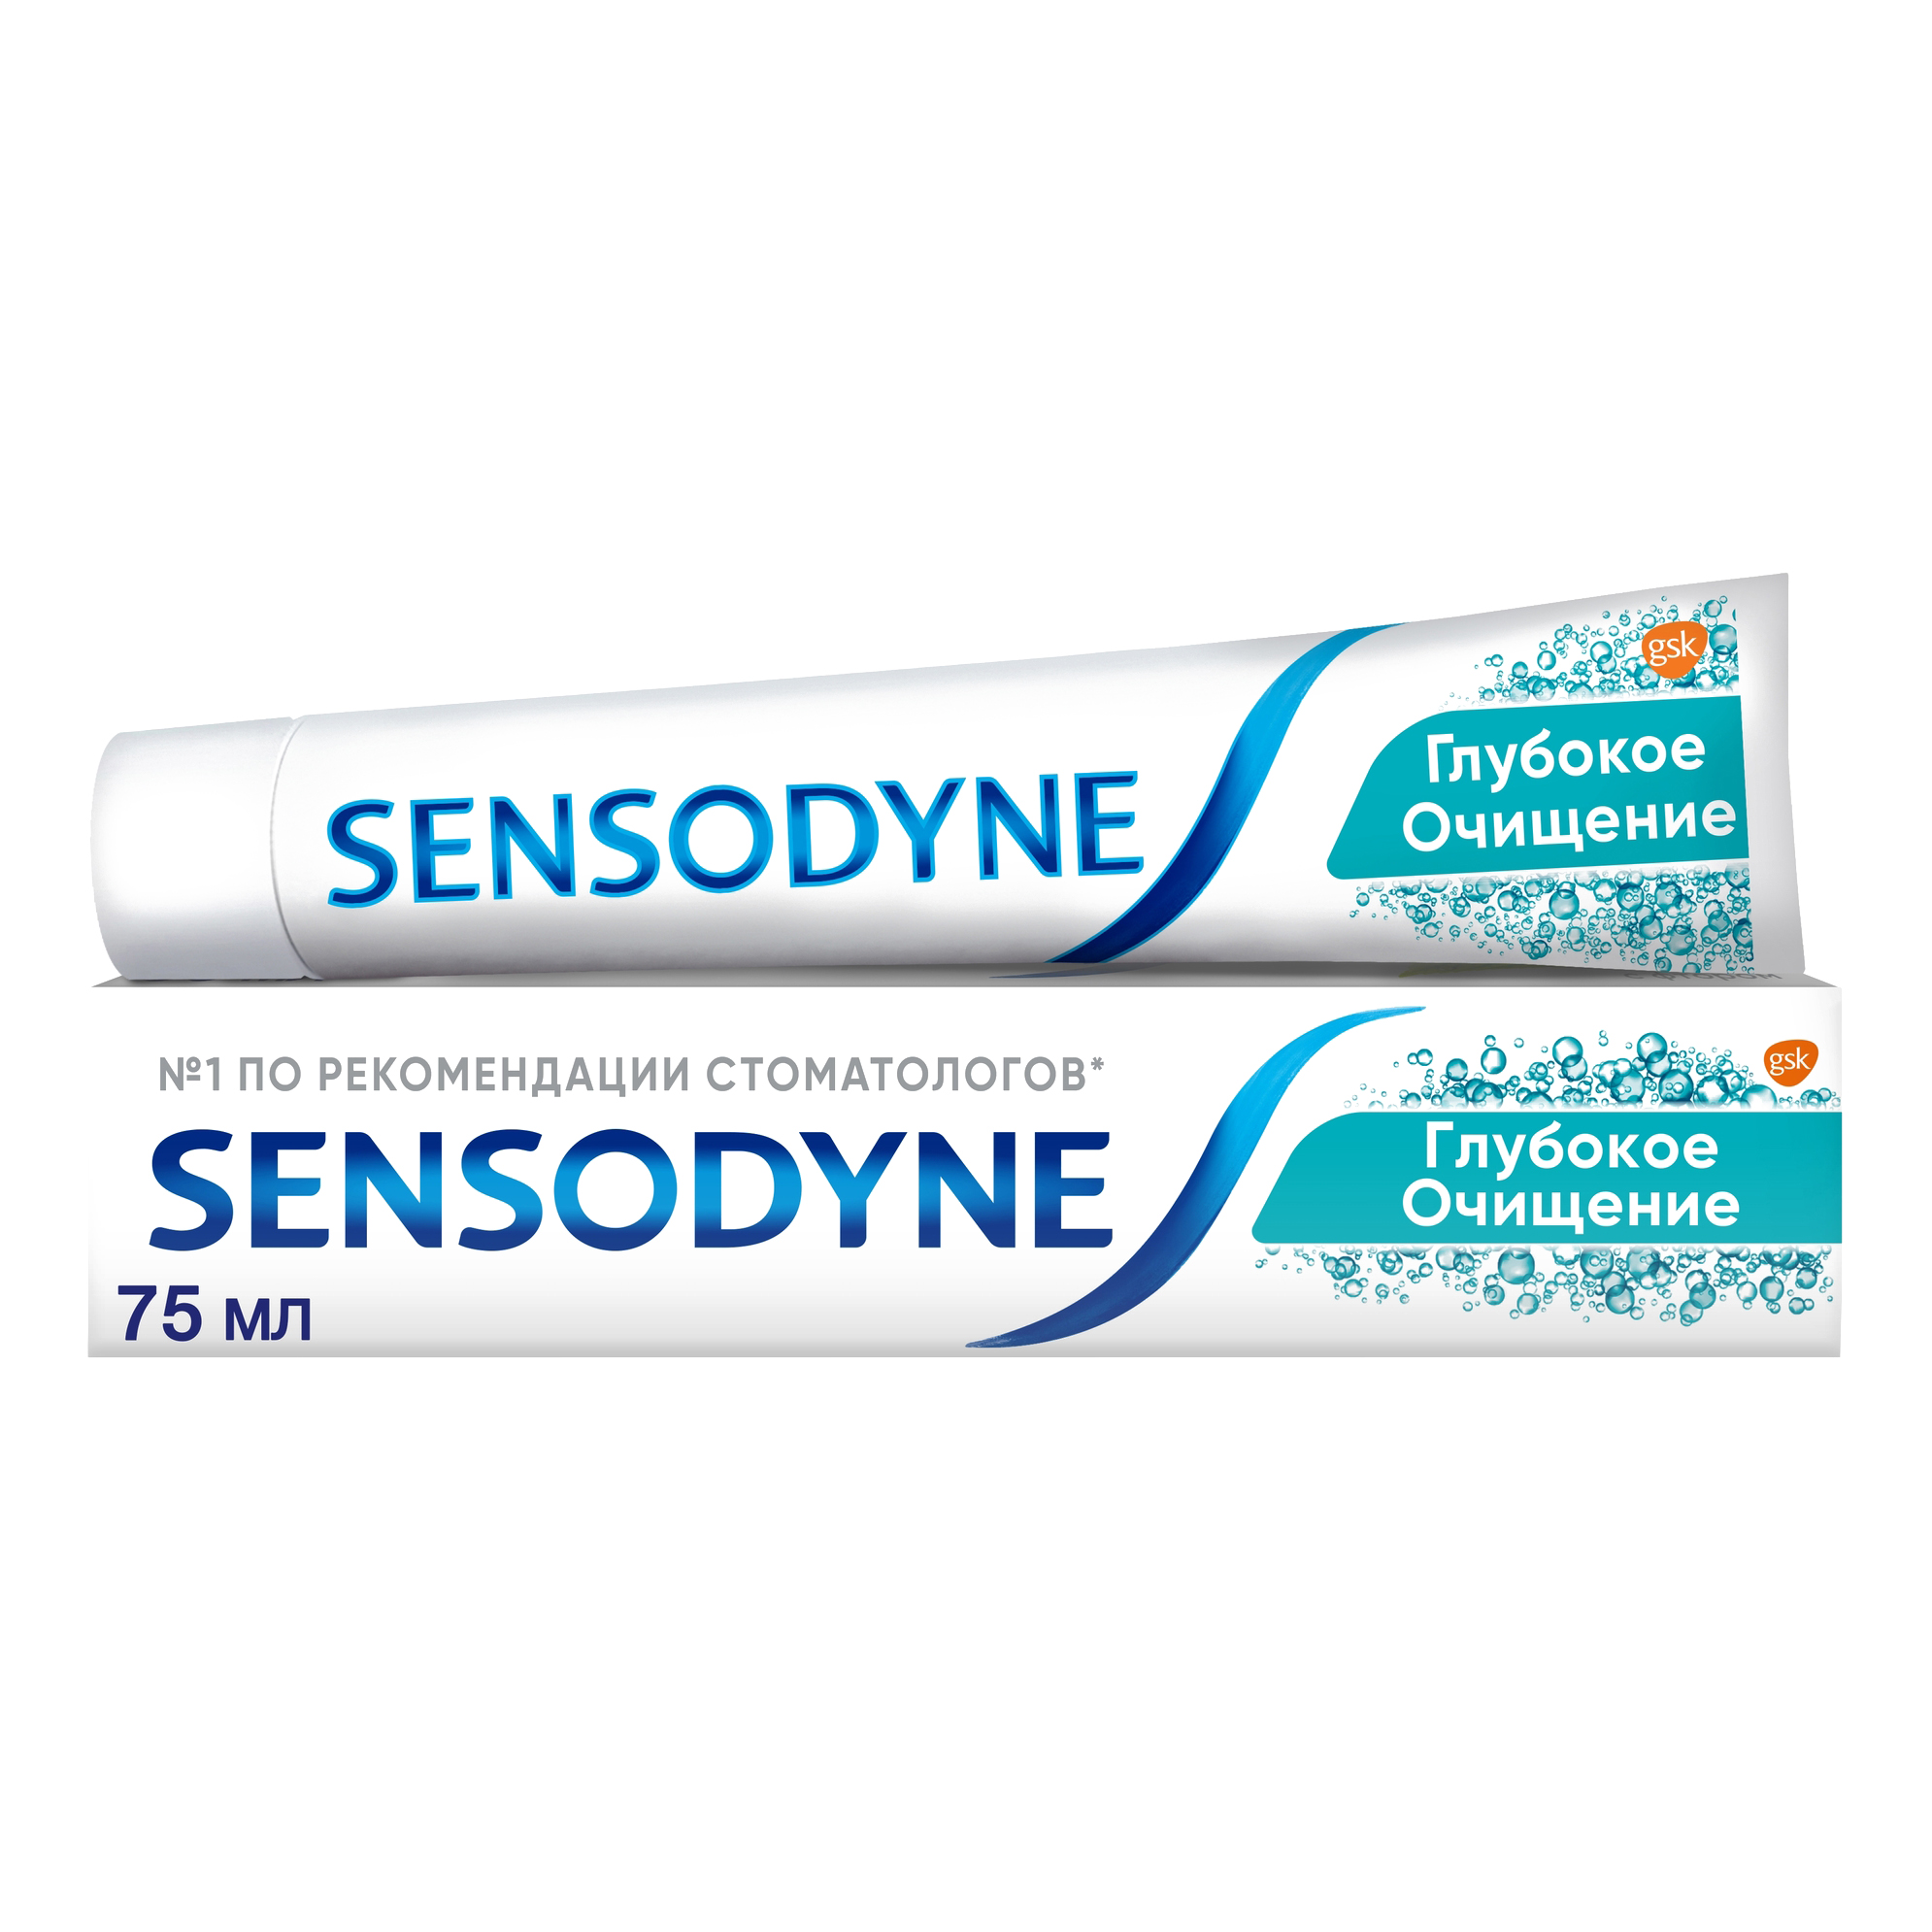 Зубная паста Sensodyne Глубокое Очищение для чувствительных зубов с фтором, 75 мл зубная паста sensodyne мгновенный эффект для чувствительных зубов с фтором 75 мл